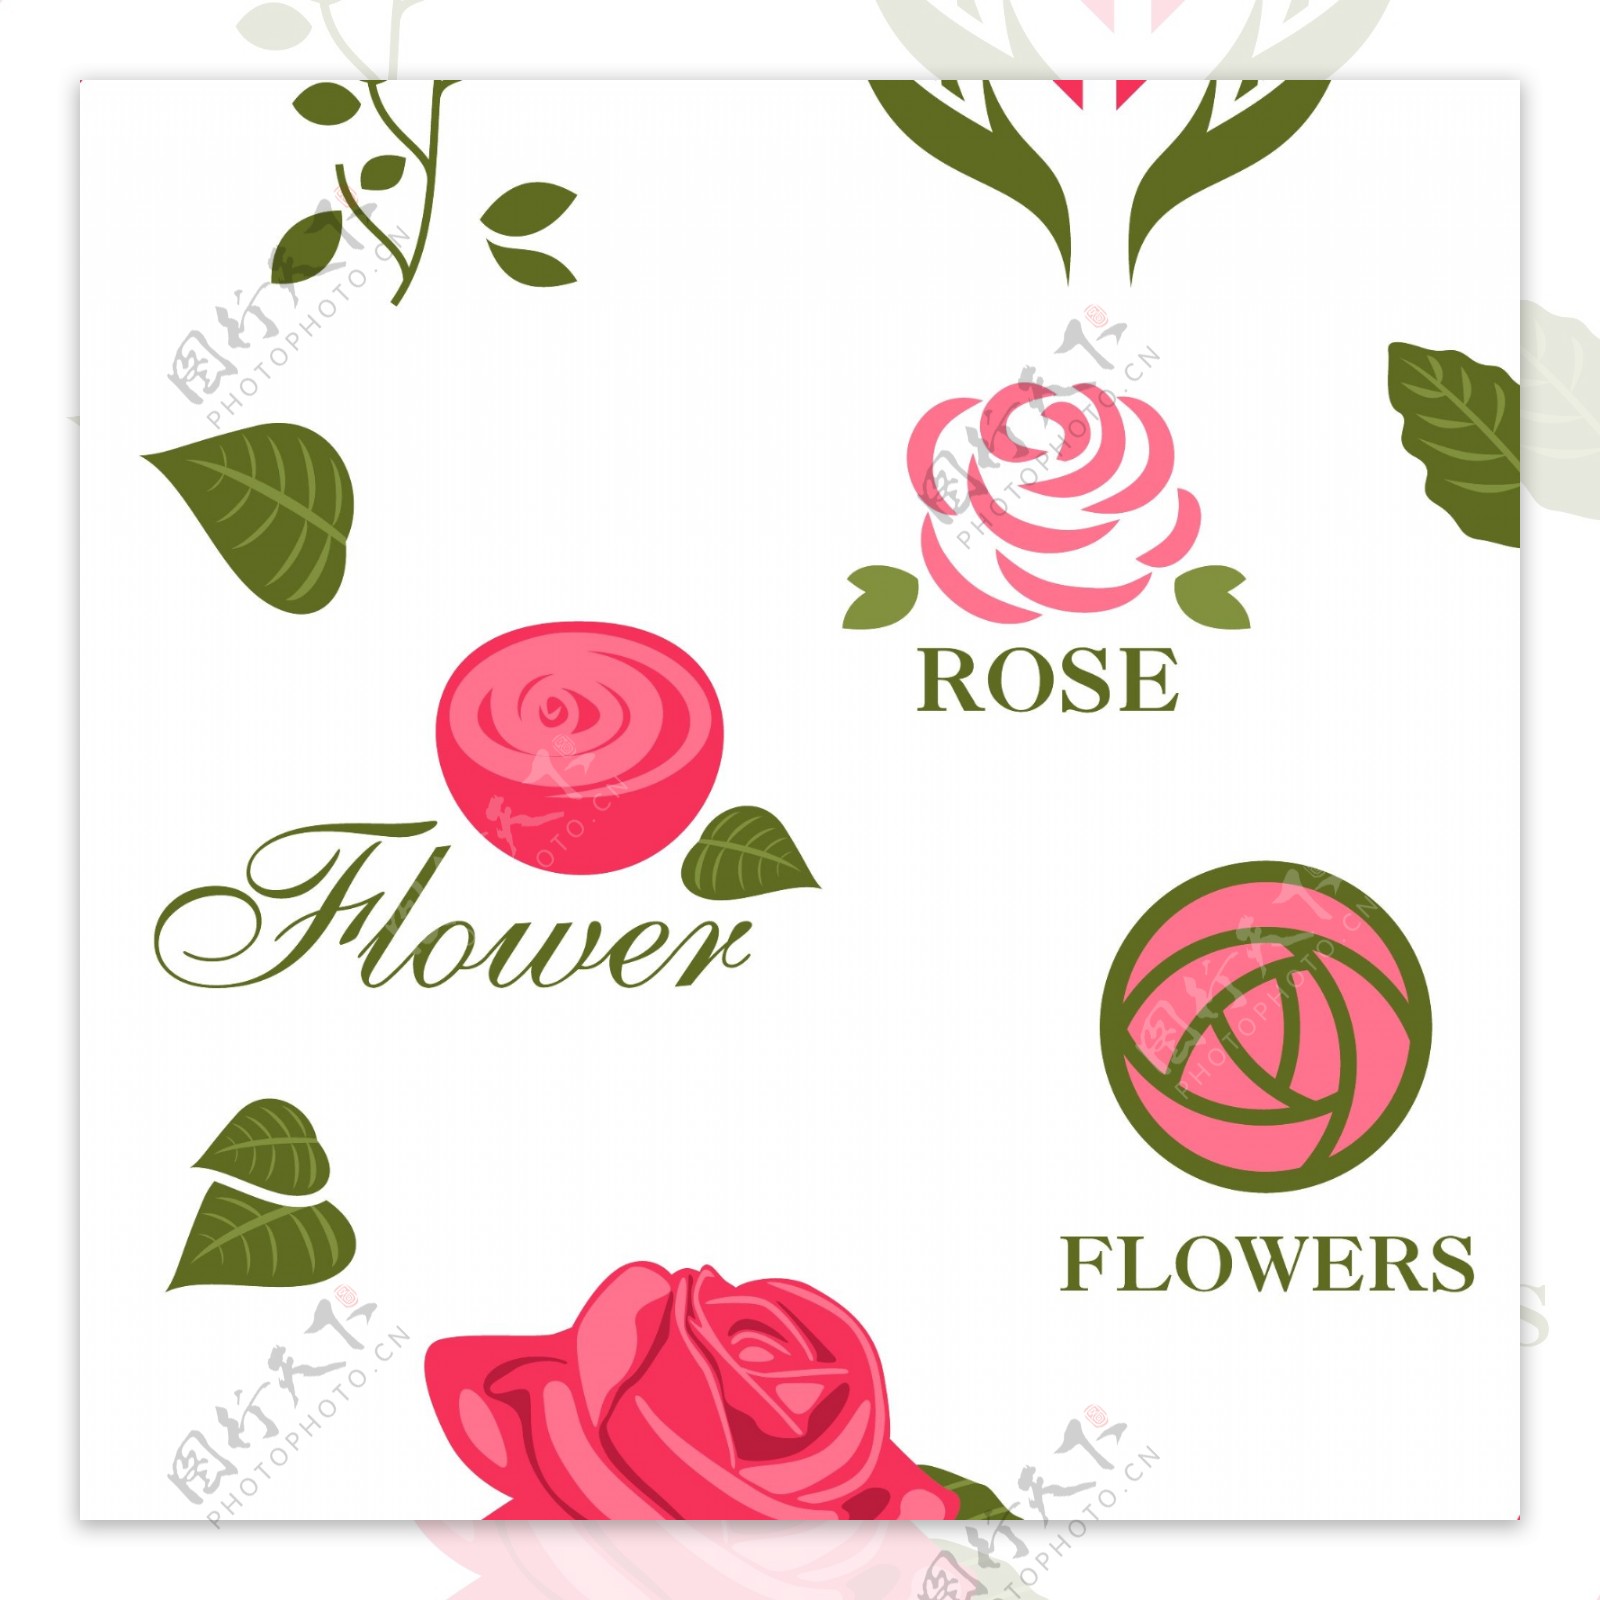 美丽玫瑰花朵图标矢量素材下载